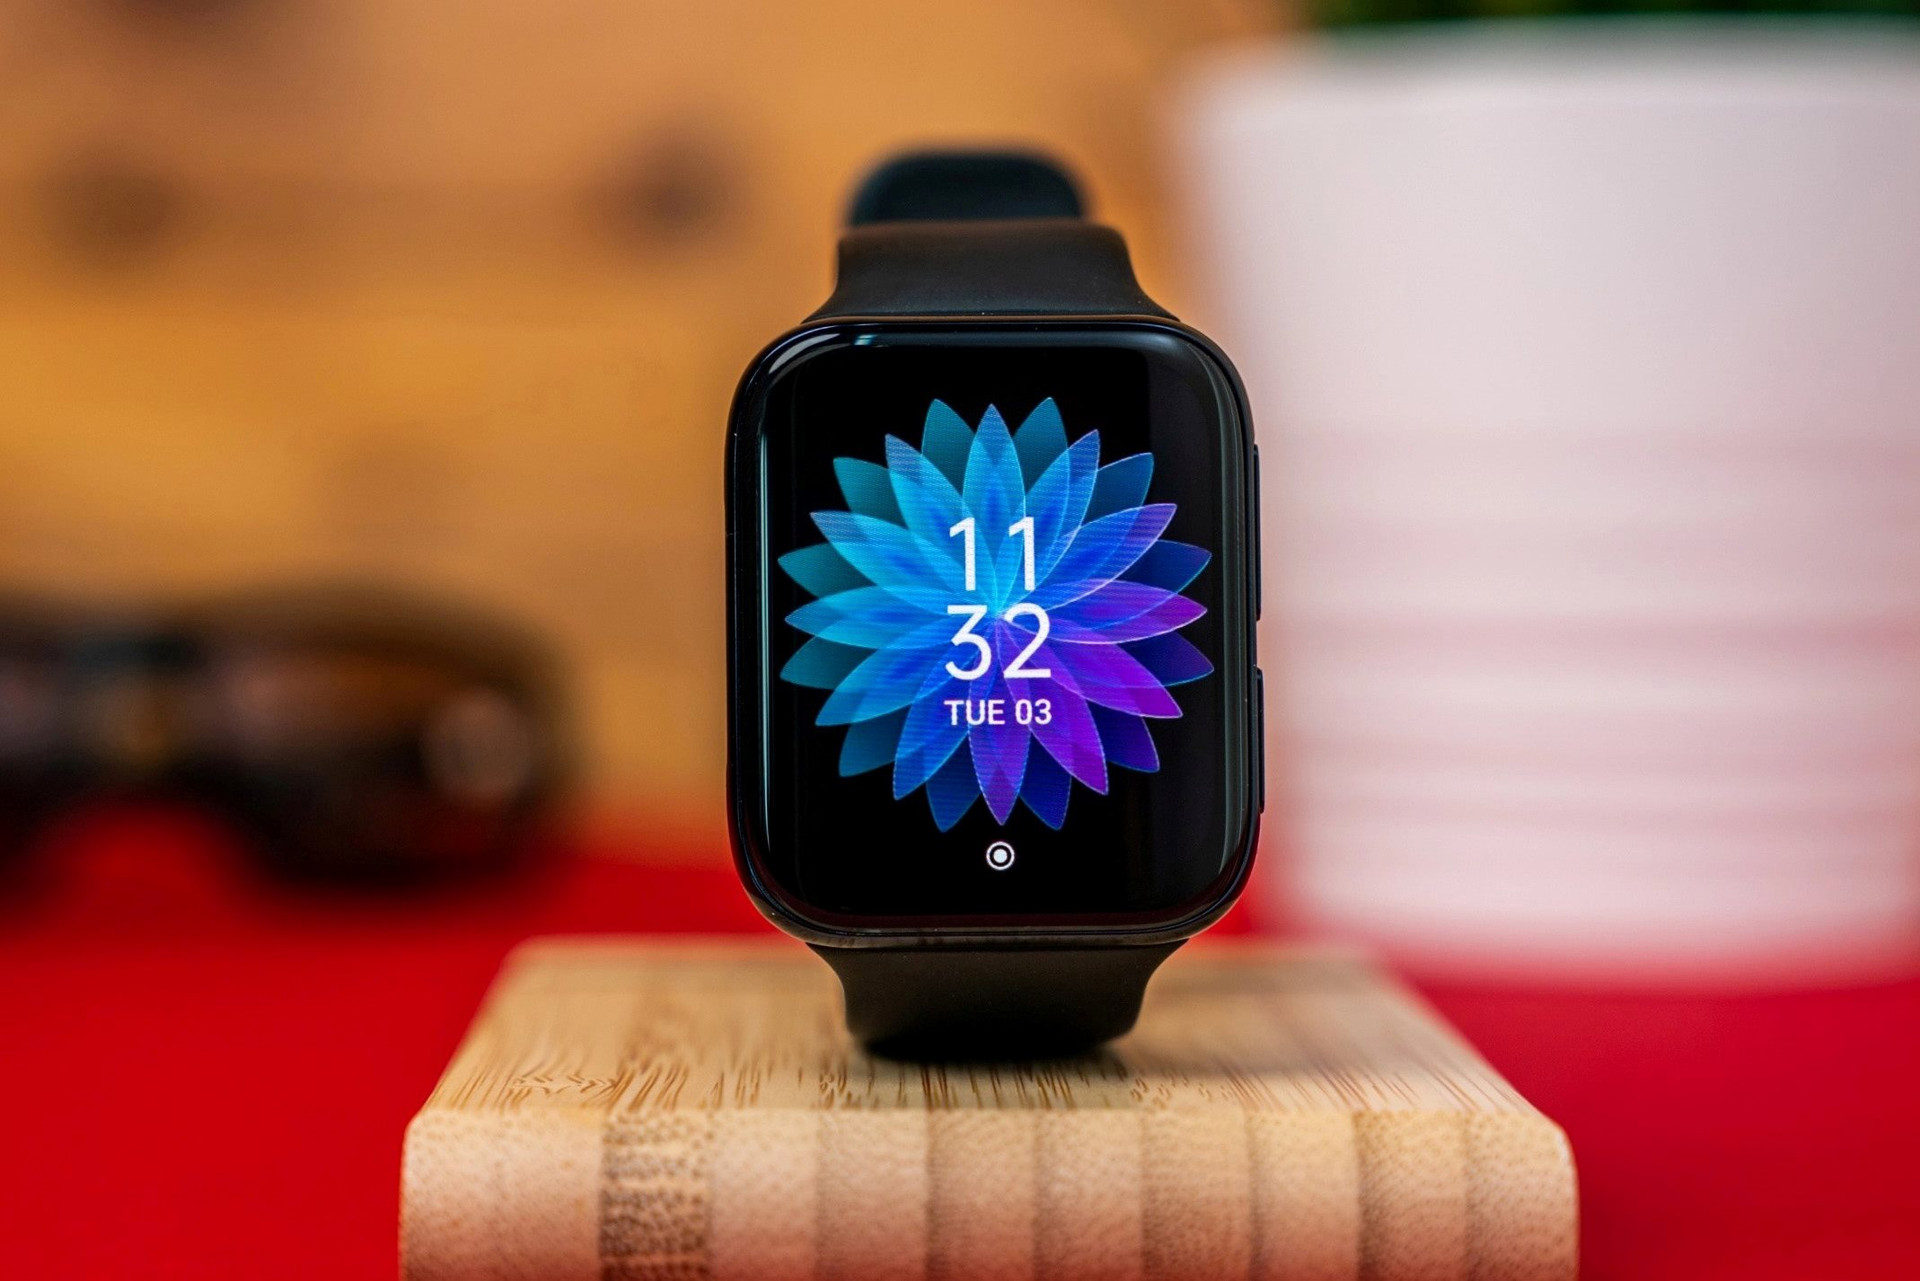 Smartwatch giảm giá Tết 2022 là cơ hội để bạn sở hữu một chiếc đồng hồ thông minh hiện đại với giá cực tốt. Với nhiều tính năng thông minh và thiết kế đẹp mắt, chiếc đồng hồ này sẽ là một món quà tuyệt vời cho mình hay những người thân của bạn.